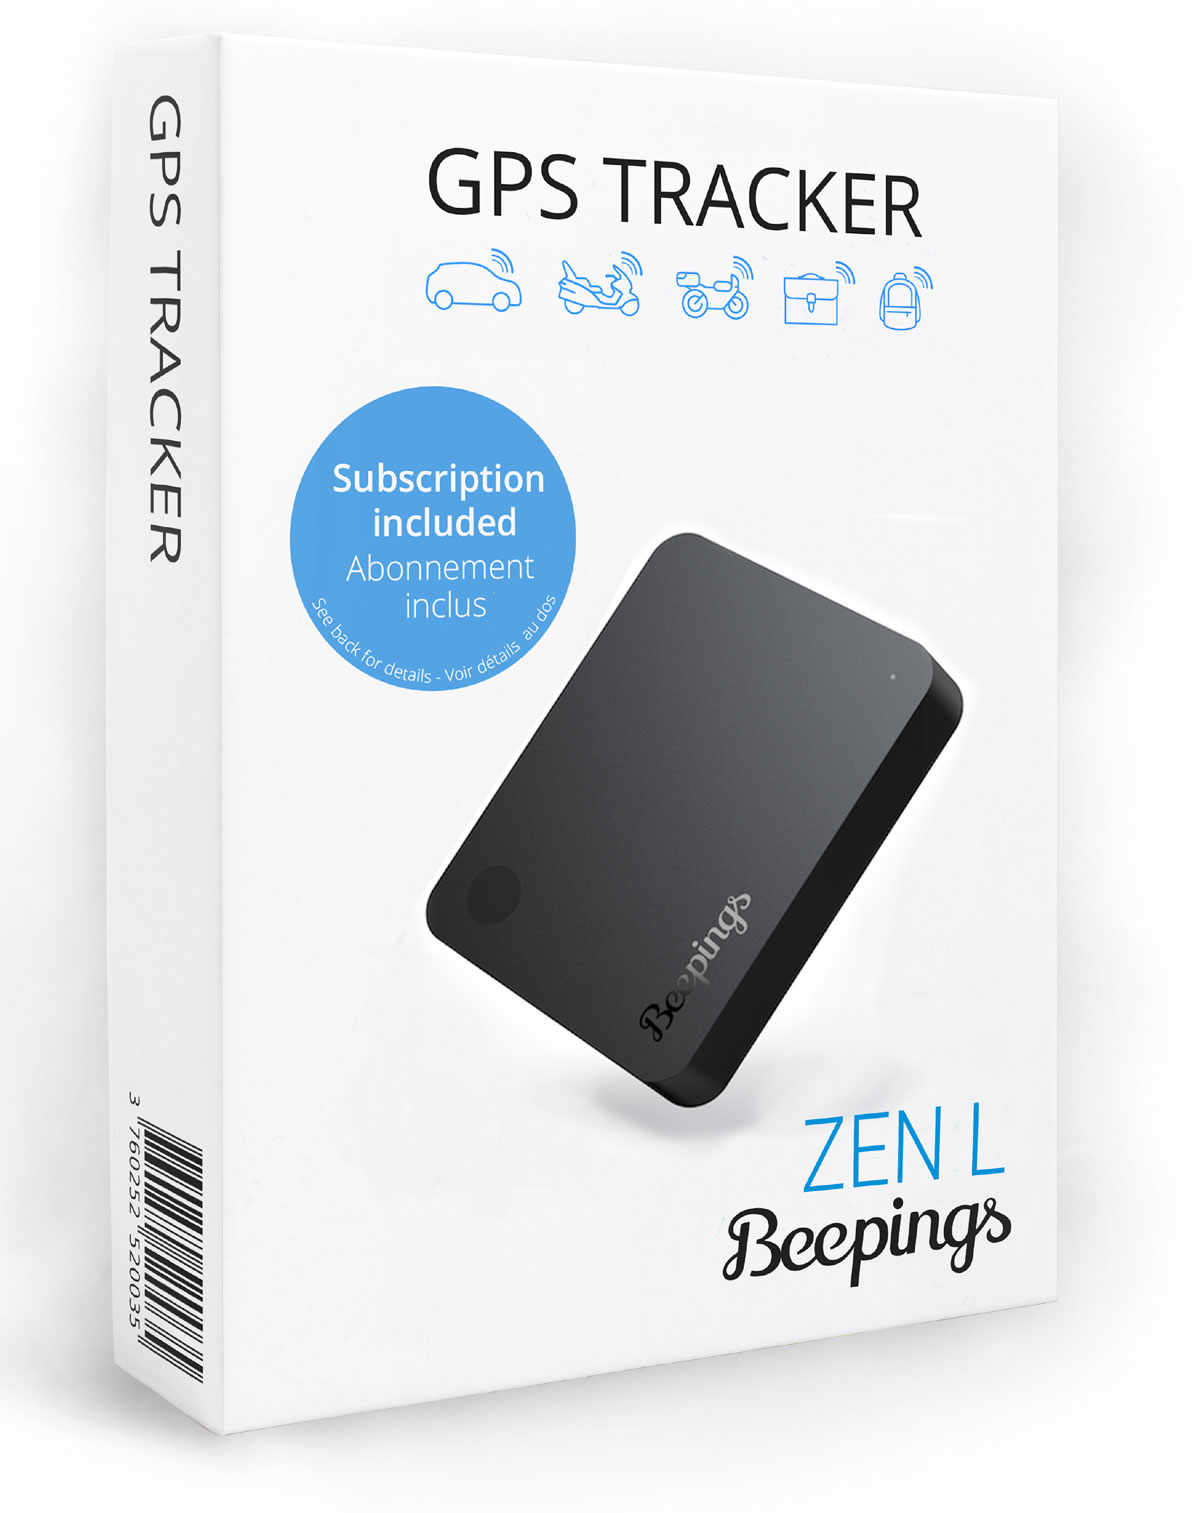 Que penser des traceurs GPS sans carte sim ?